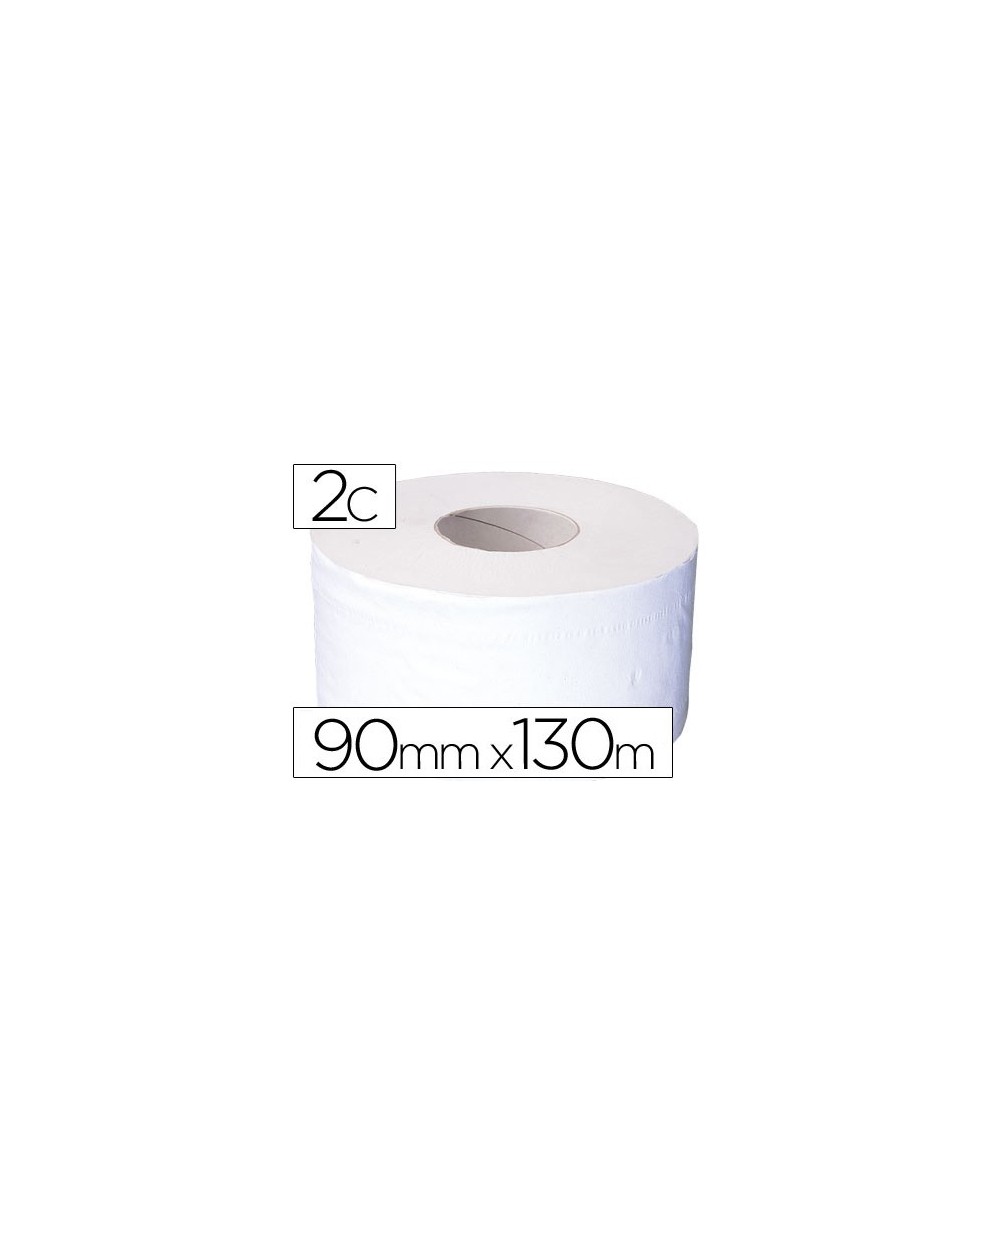 Papel higienico jumbo 2 capas reciclado rollo con 130 mts para dispensador 925